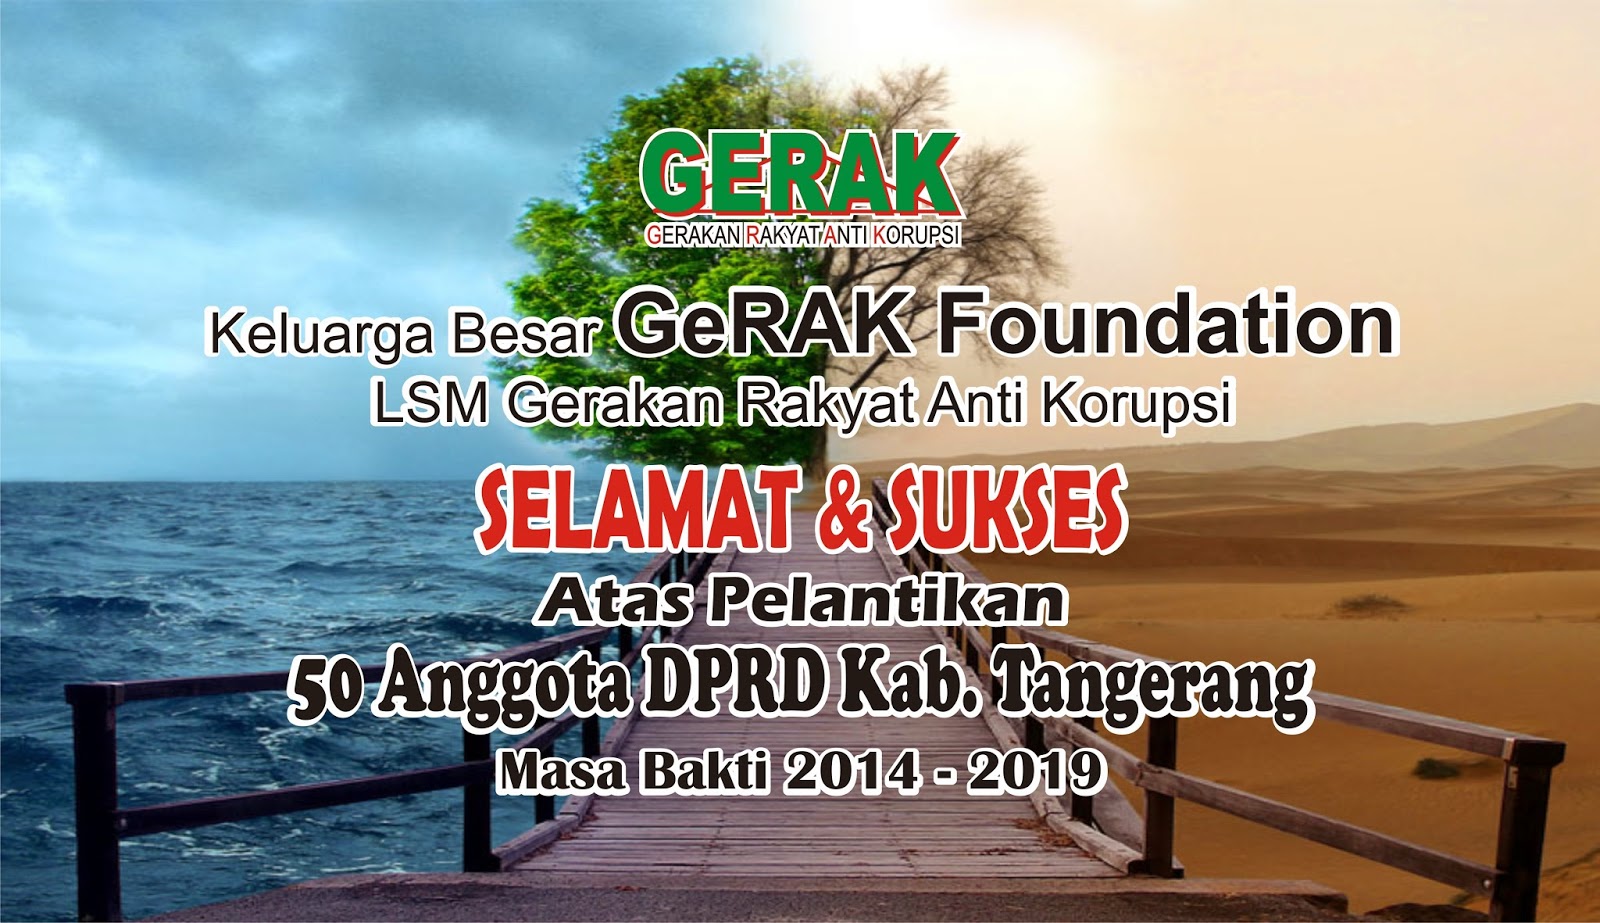 GeRAK Indonesia Foundation: 2014